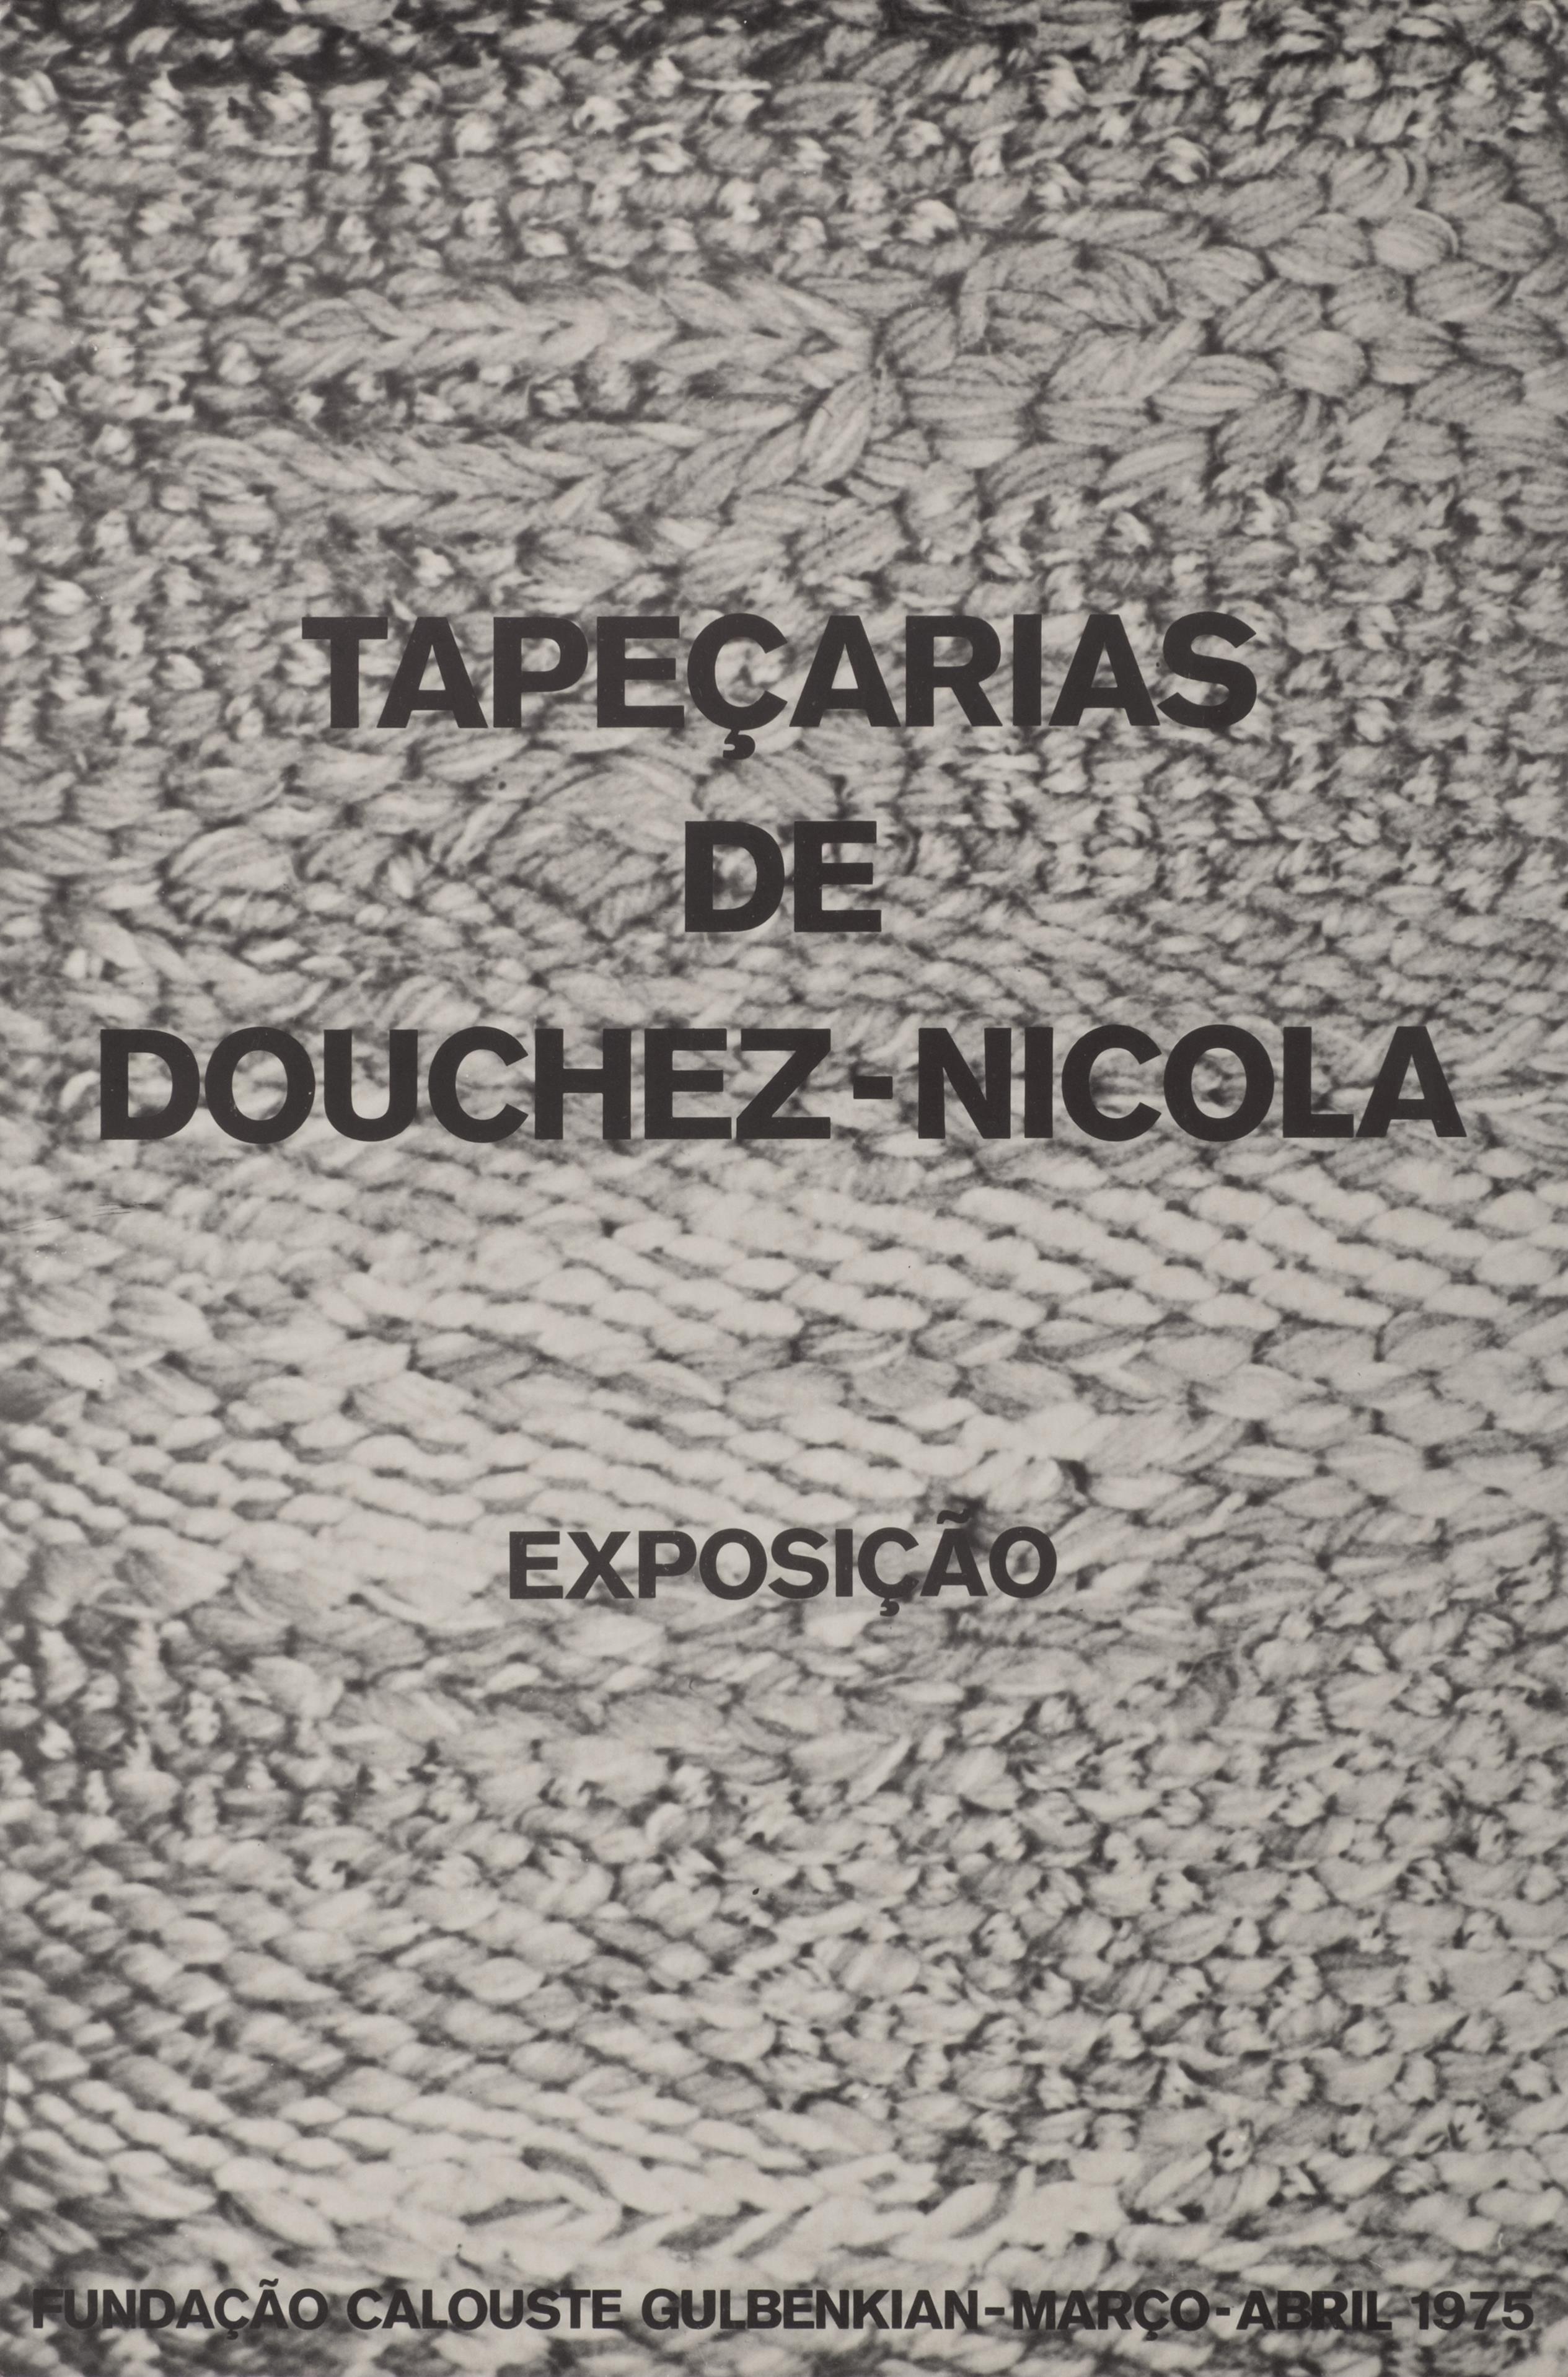 Tapeçarias de Douchez-Nicola